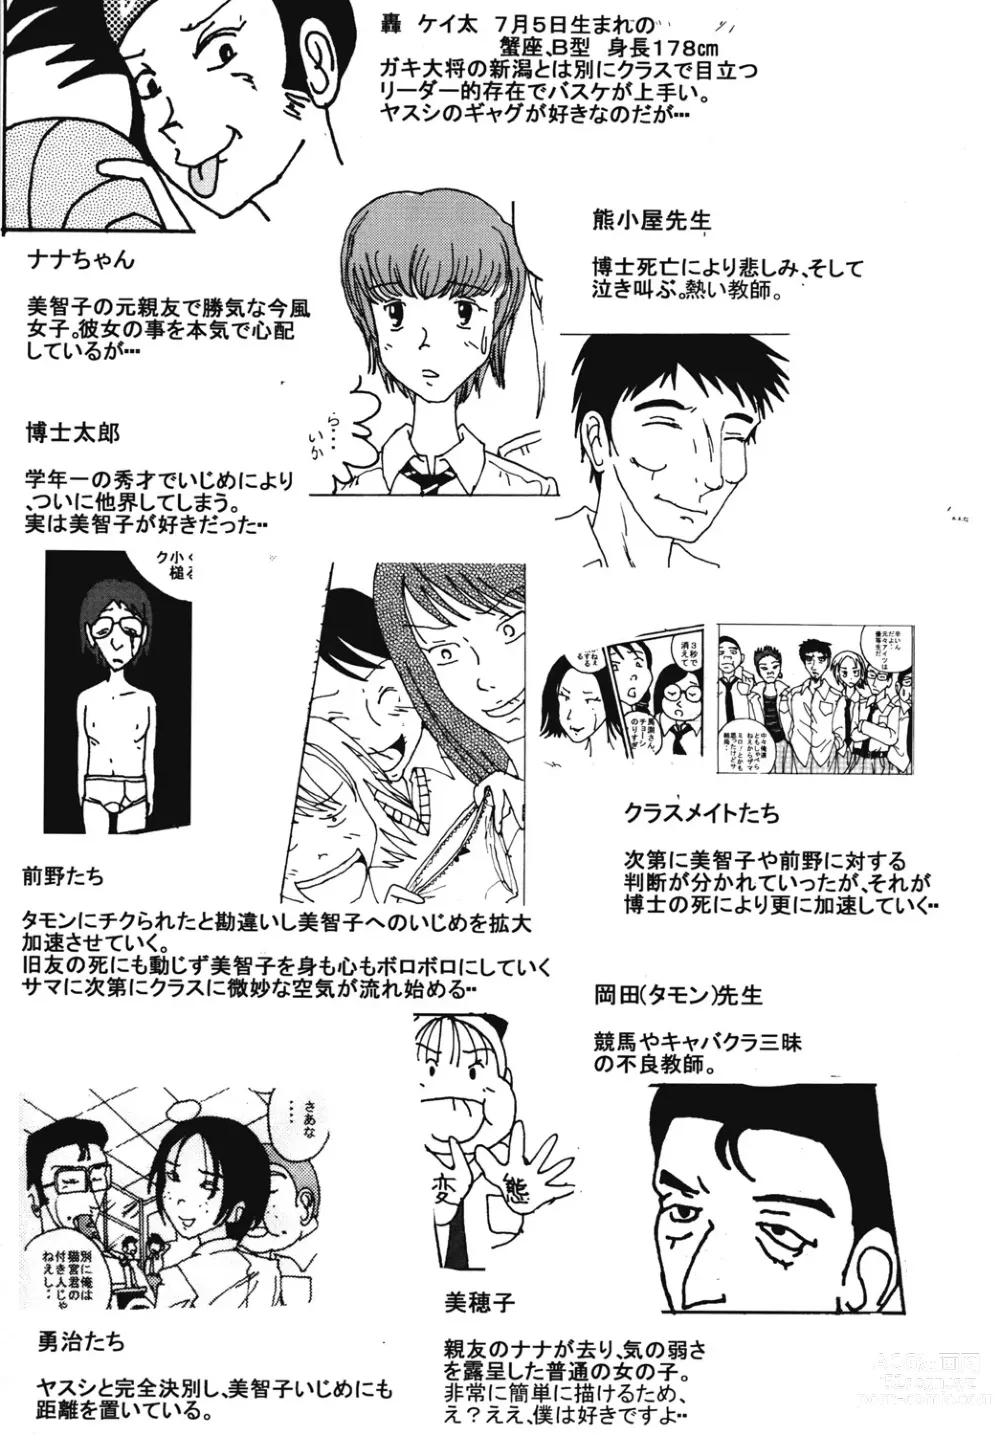 Page 58 of doujinshi Mune Ippai no Dizzy